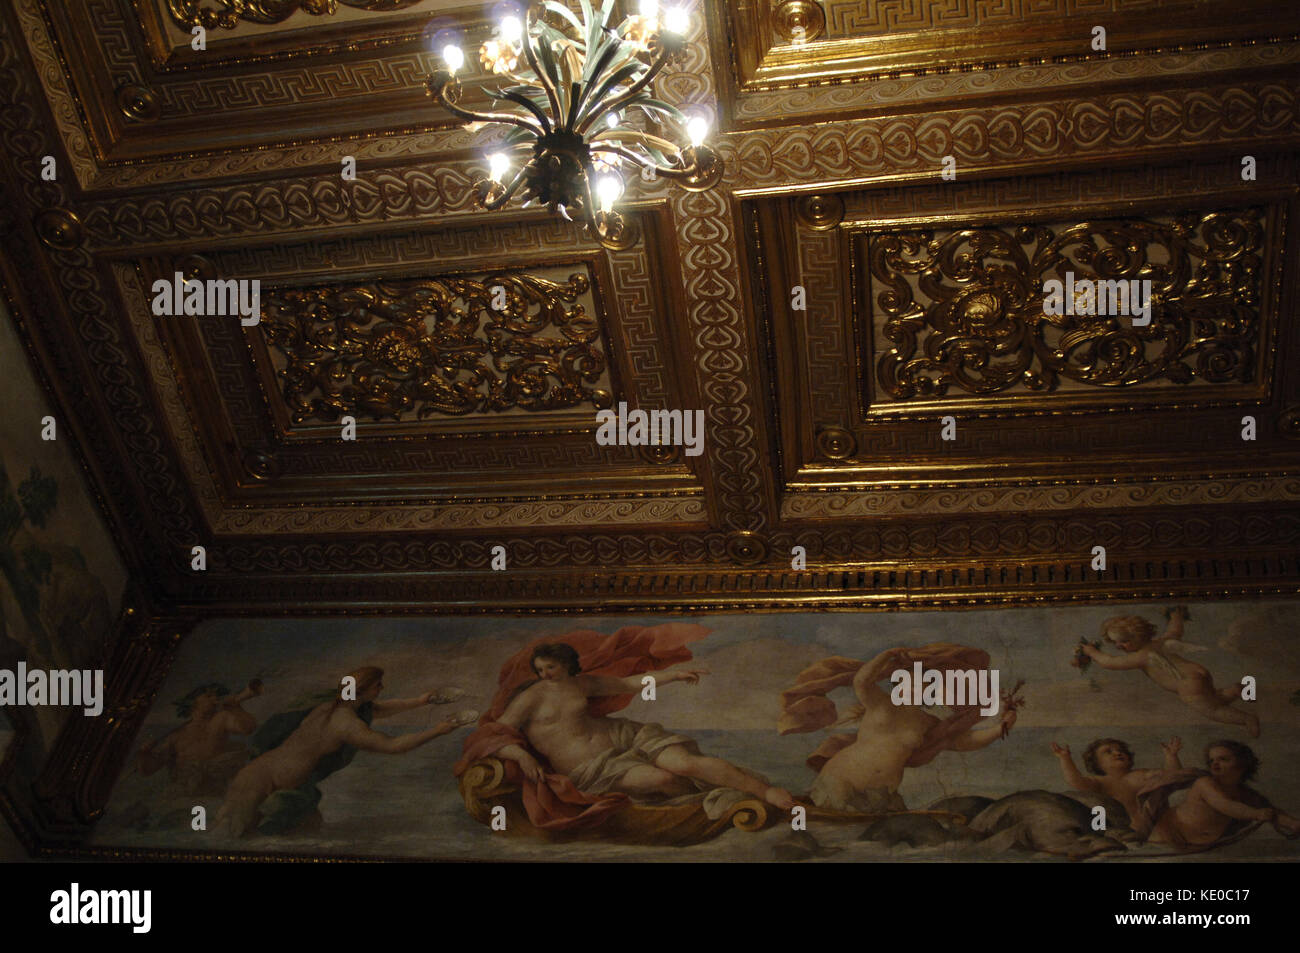 L'Italie, Rome. palais altemps 15ème-16ème siècle.( romain national museum). détails de la peinture décorative de l'une de ses chambres. Banque D'Images